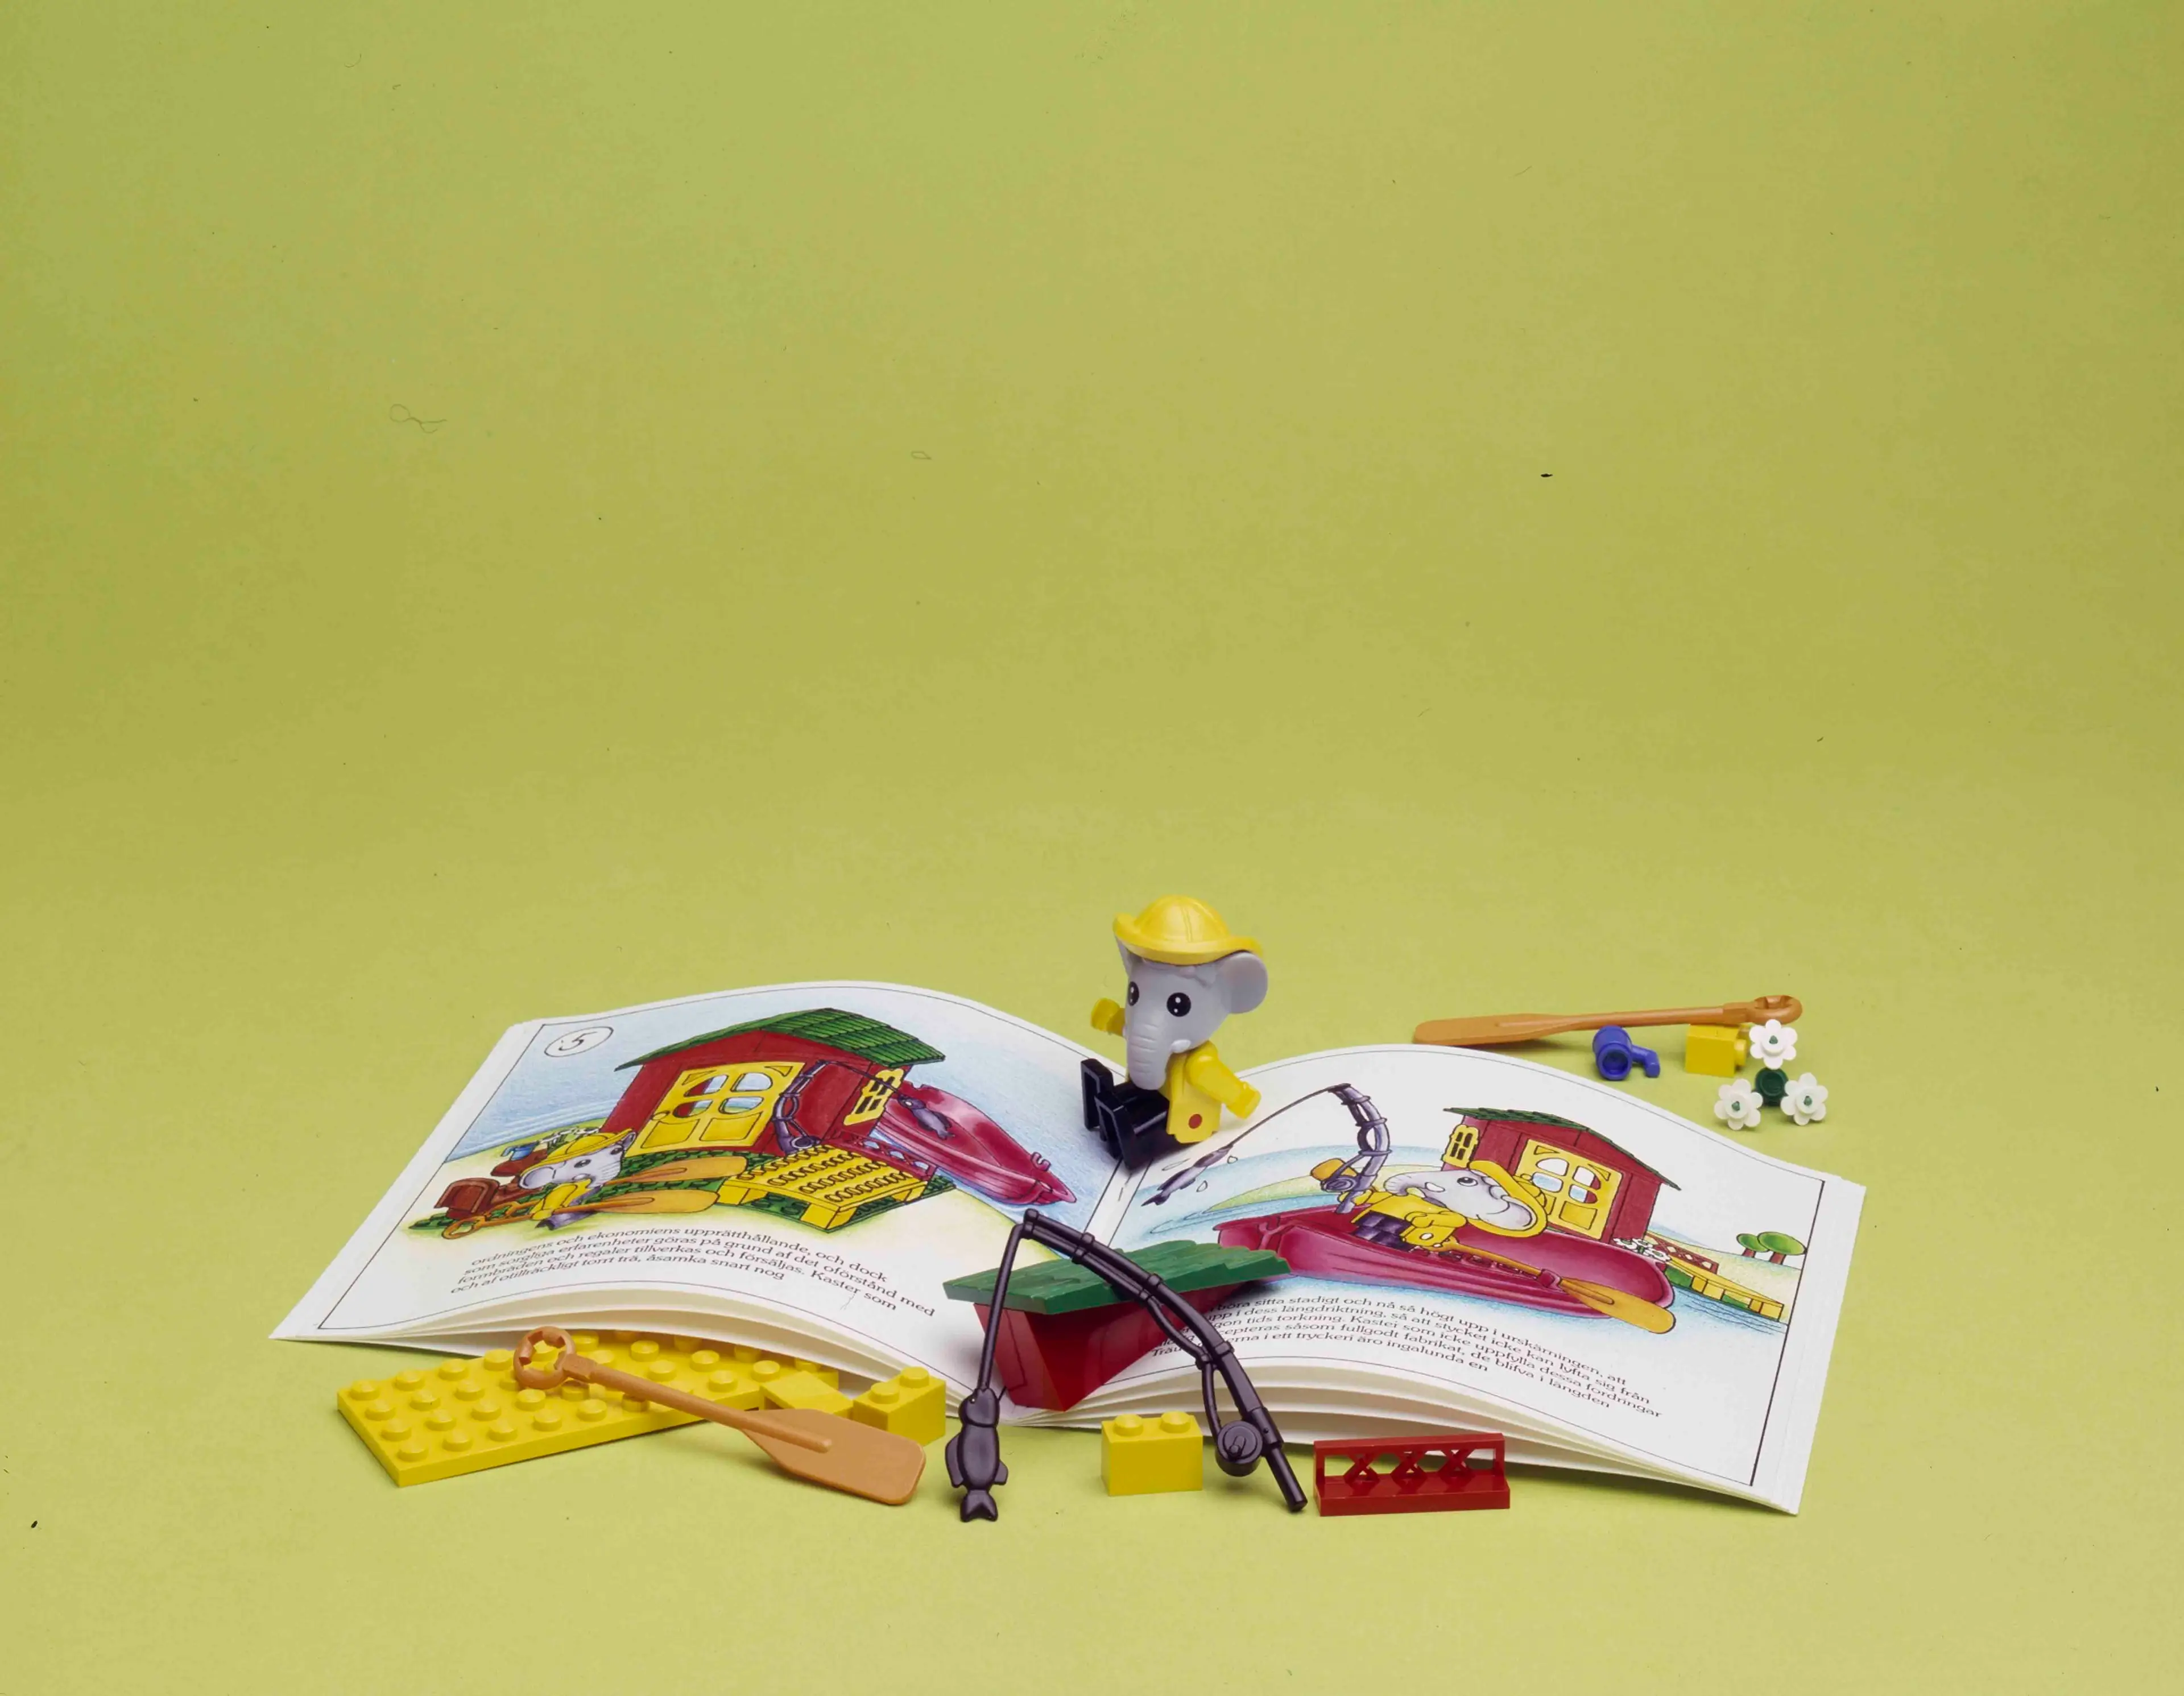 A LEGO FABULAND storybook